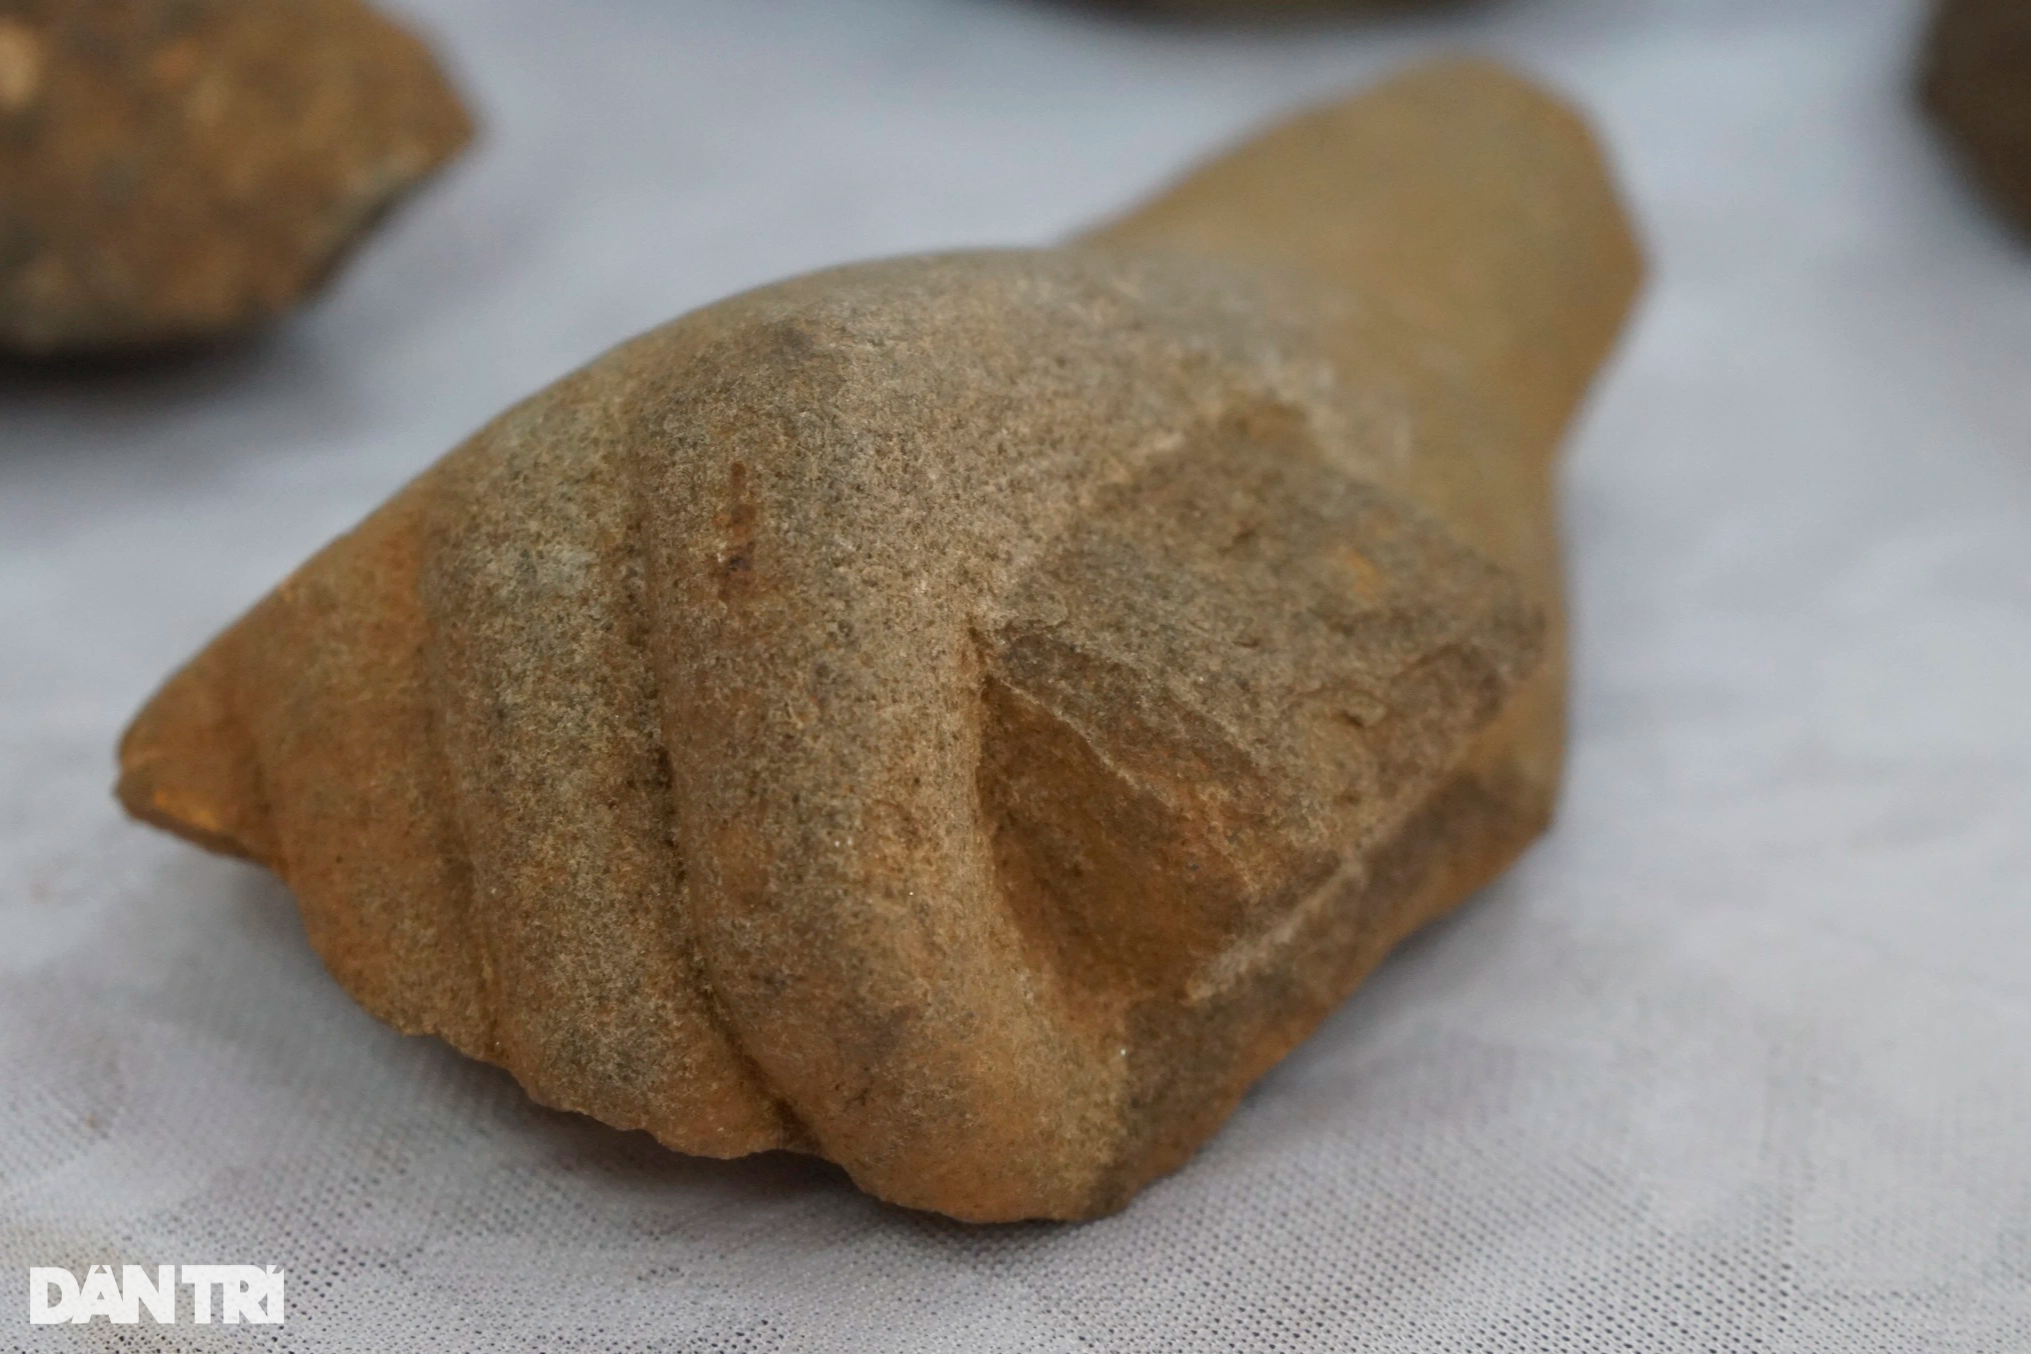 Khai quật phế tích cổ hơn 1.500 năm của người Chăm ở Bình Định - 9